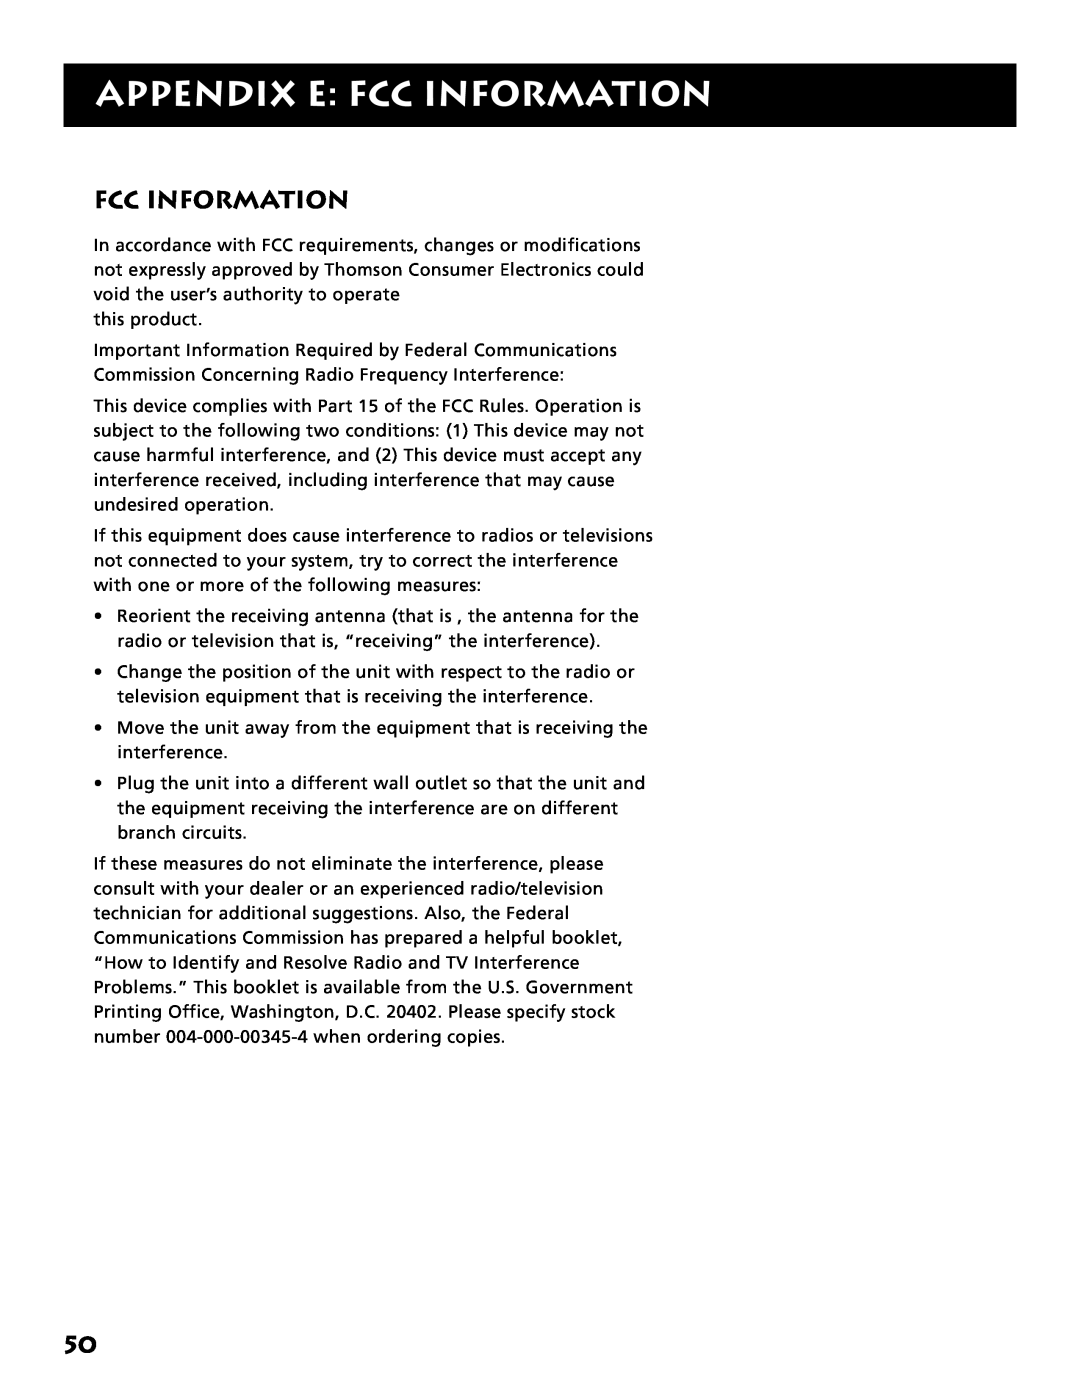 Electrohome RV-3798 manual Appendix E: Fcc Information 